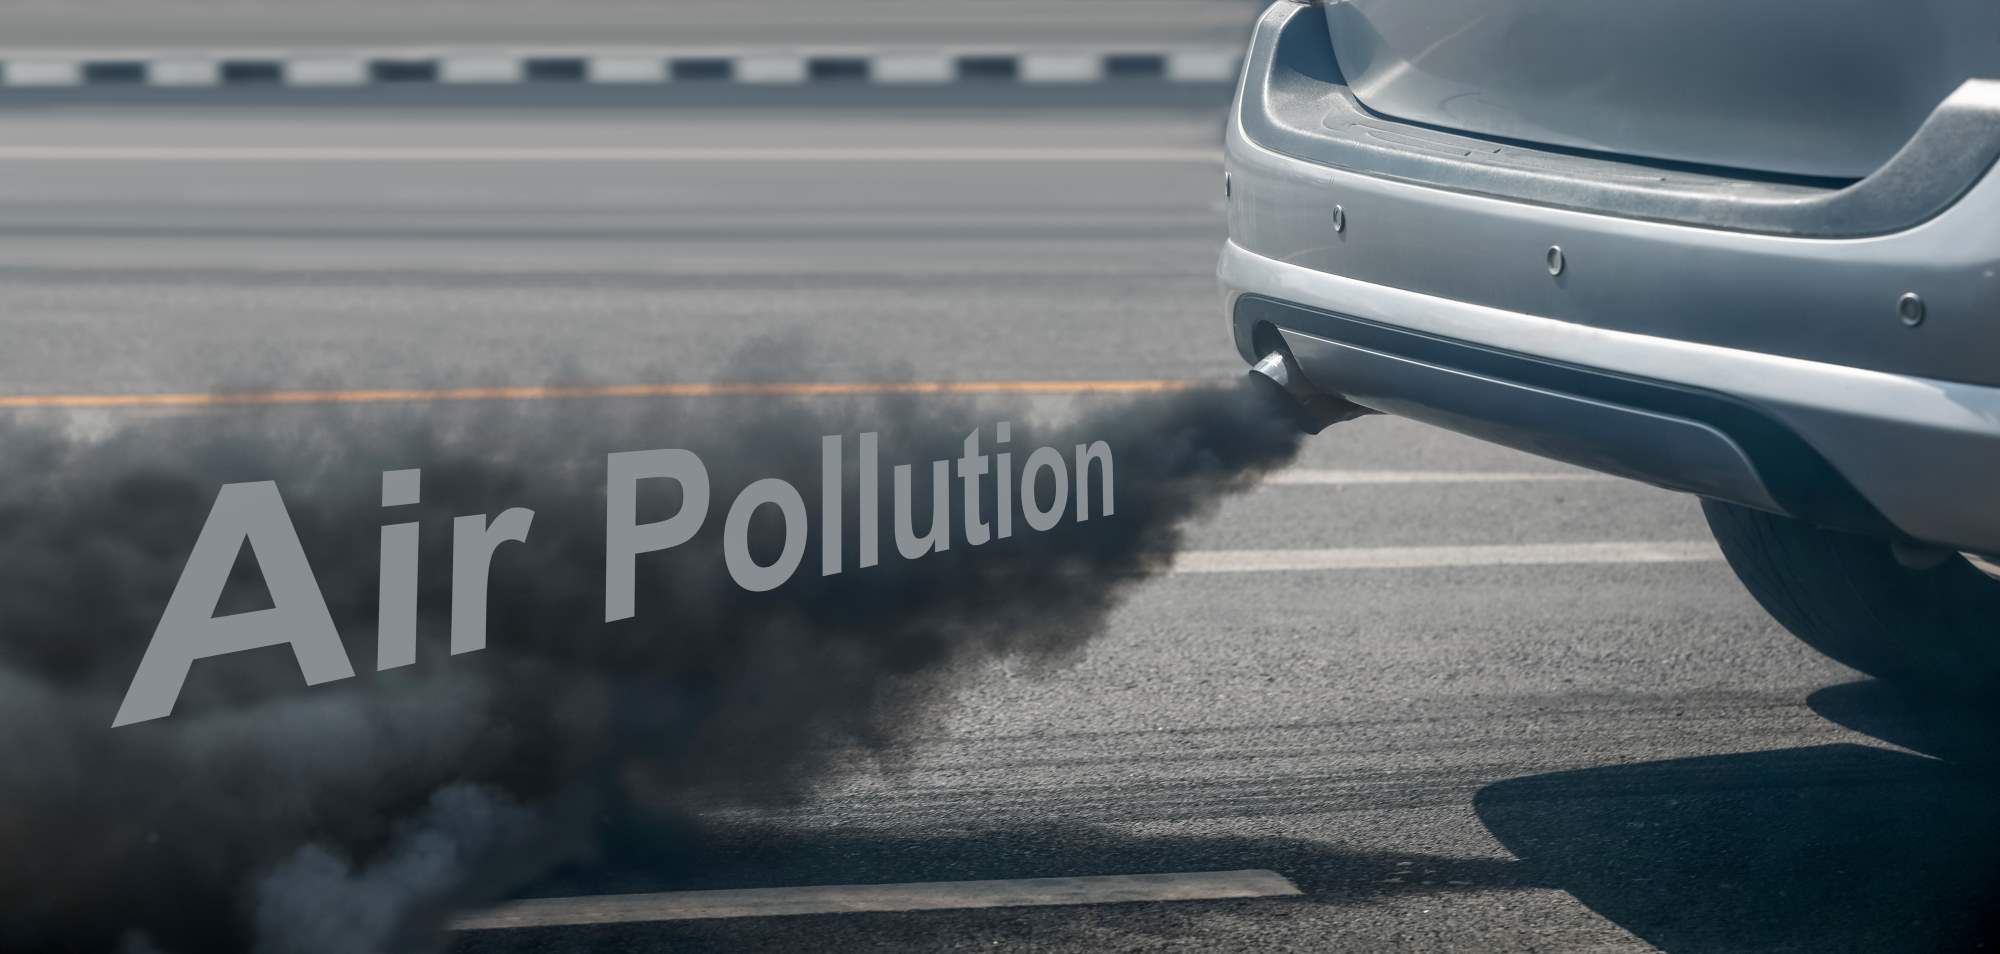 A car emitting emissions